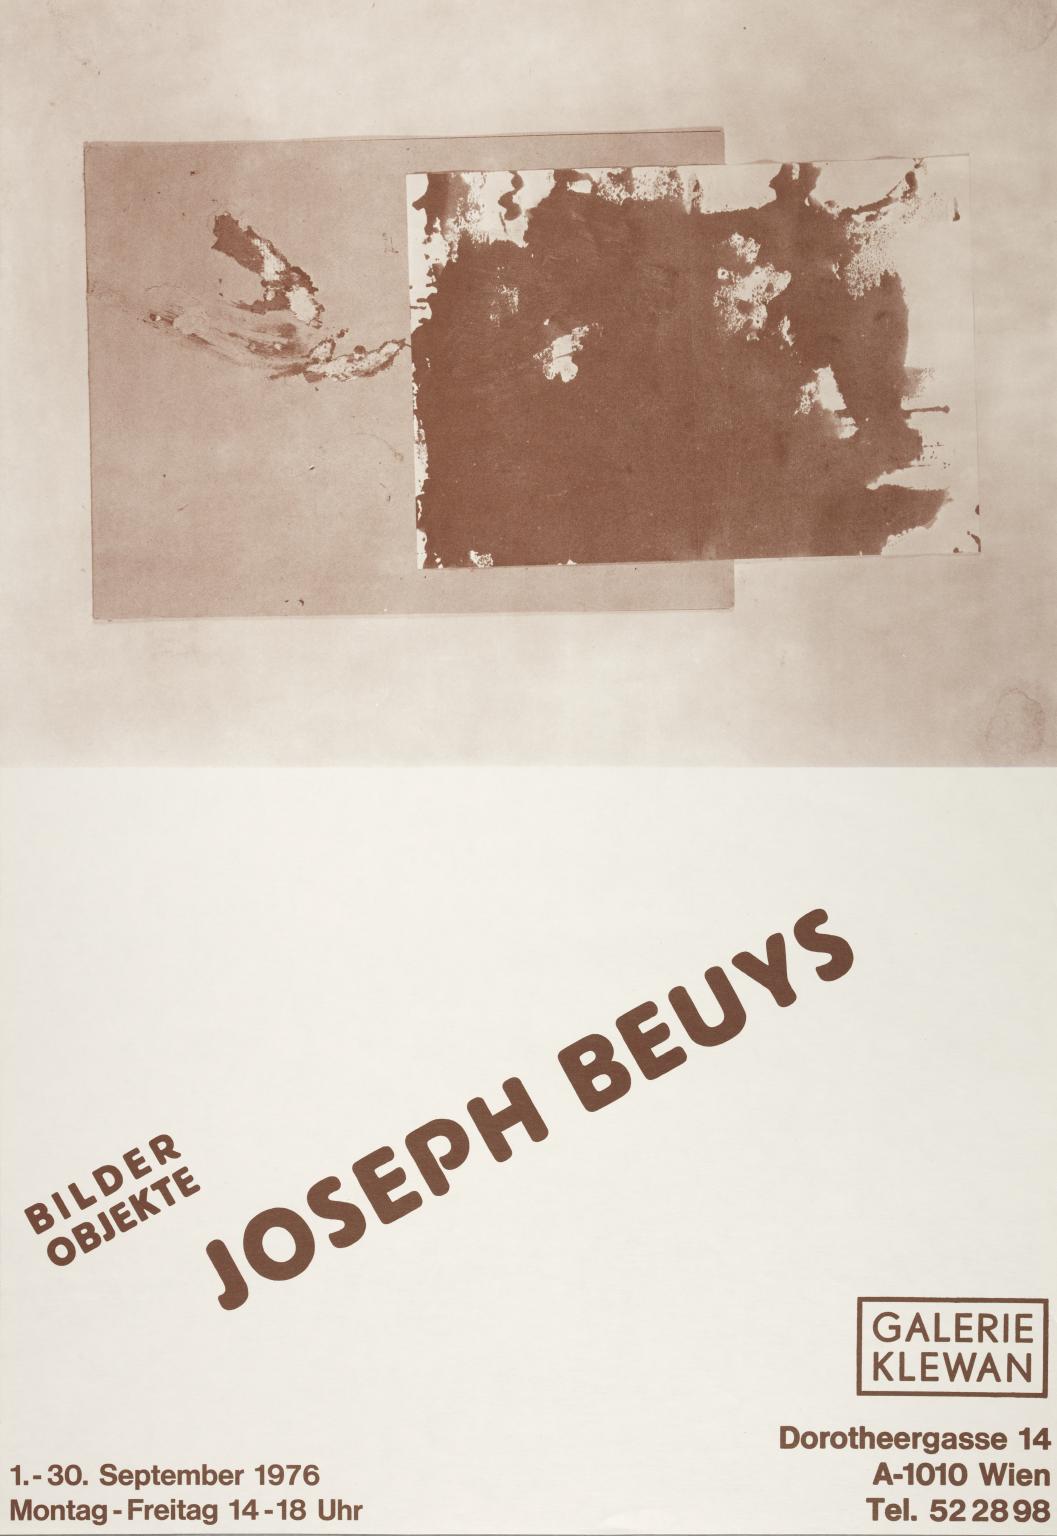 BILDER, OBJEKTE. JOSEPH BEUYS. 1976